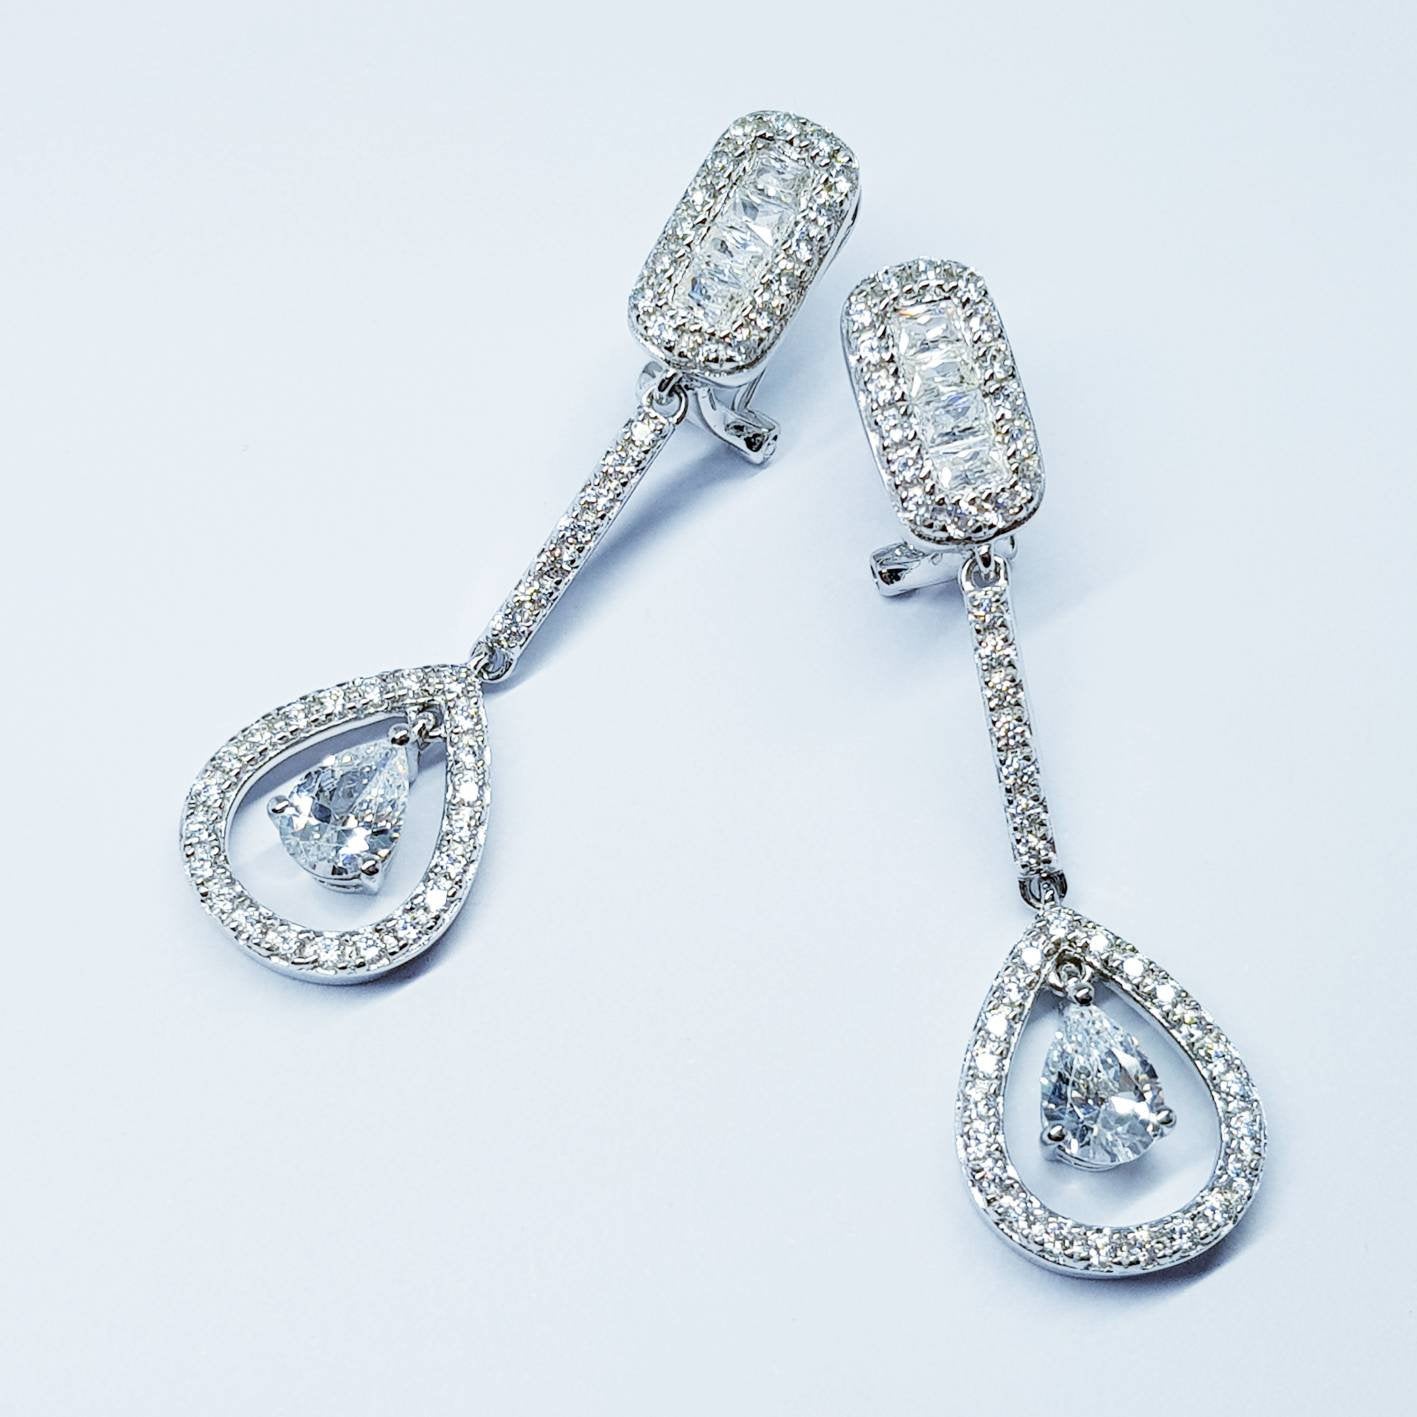 Art Deco Earrings / Bridal Earrings / Great Gatsby Jewelry / wedding Earrings / drop and dangle Earrings / vintage earrings